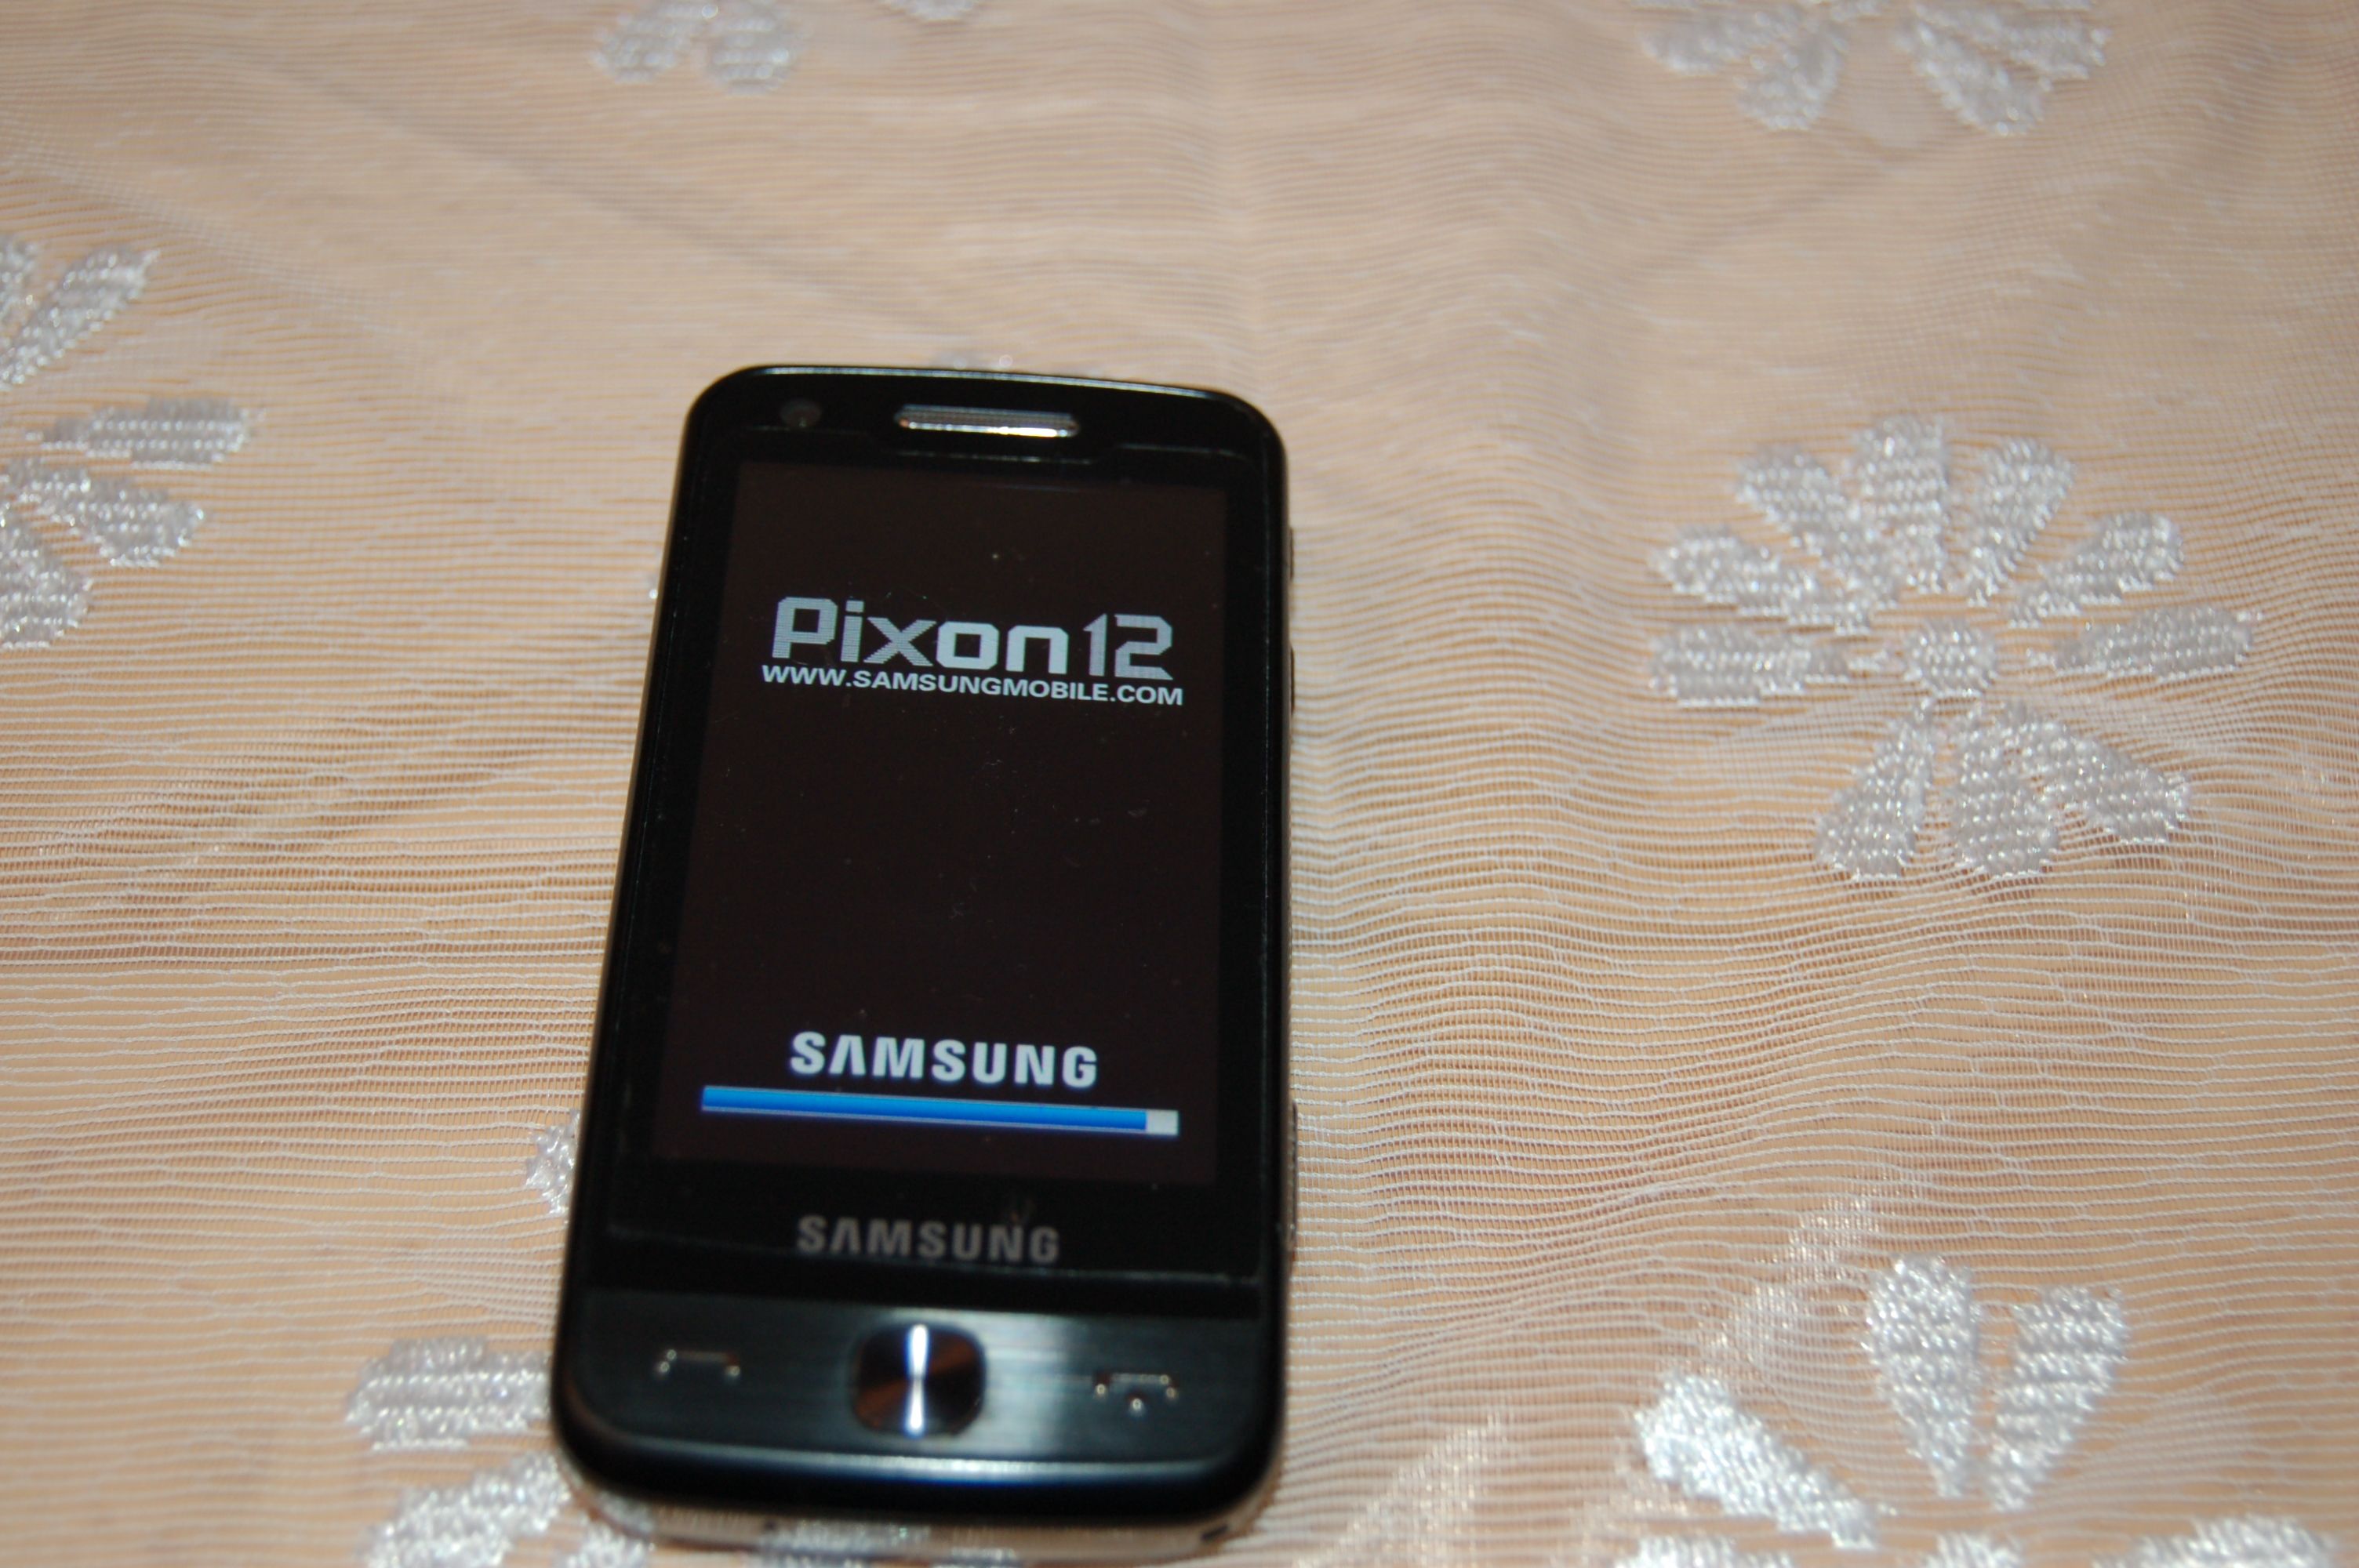 Samsung GT M8910 Pixon12 Handy TOP GPS Smartphone Touch 12 Megapixel